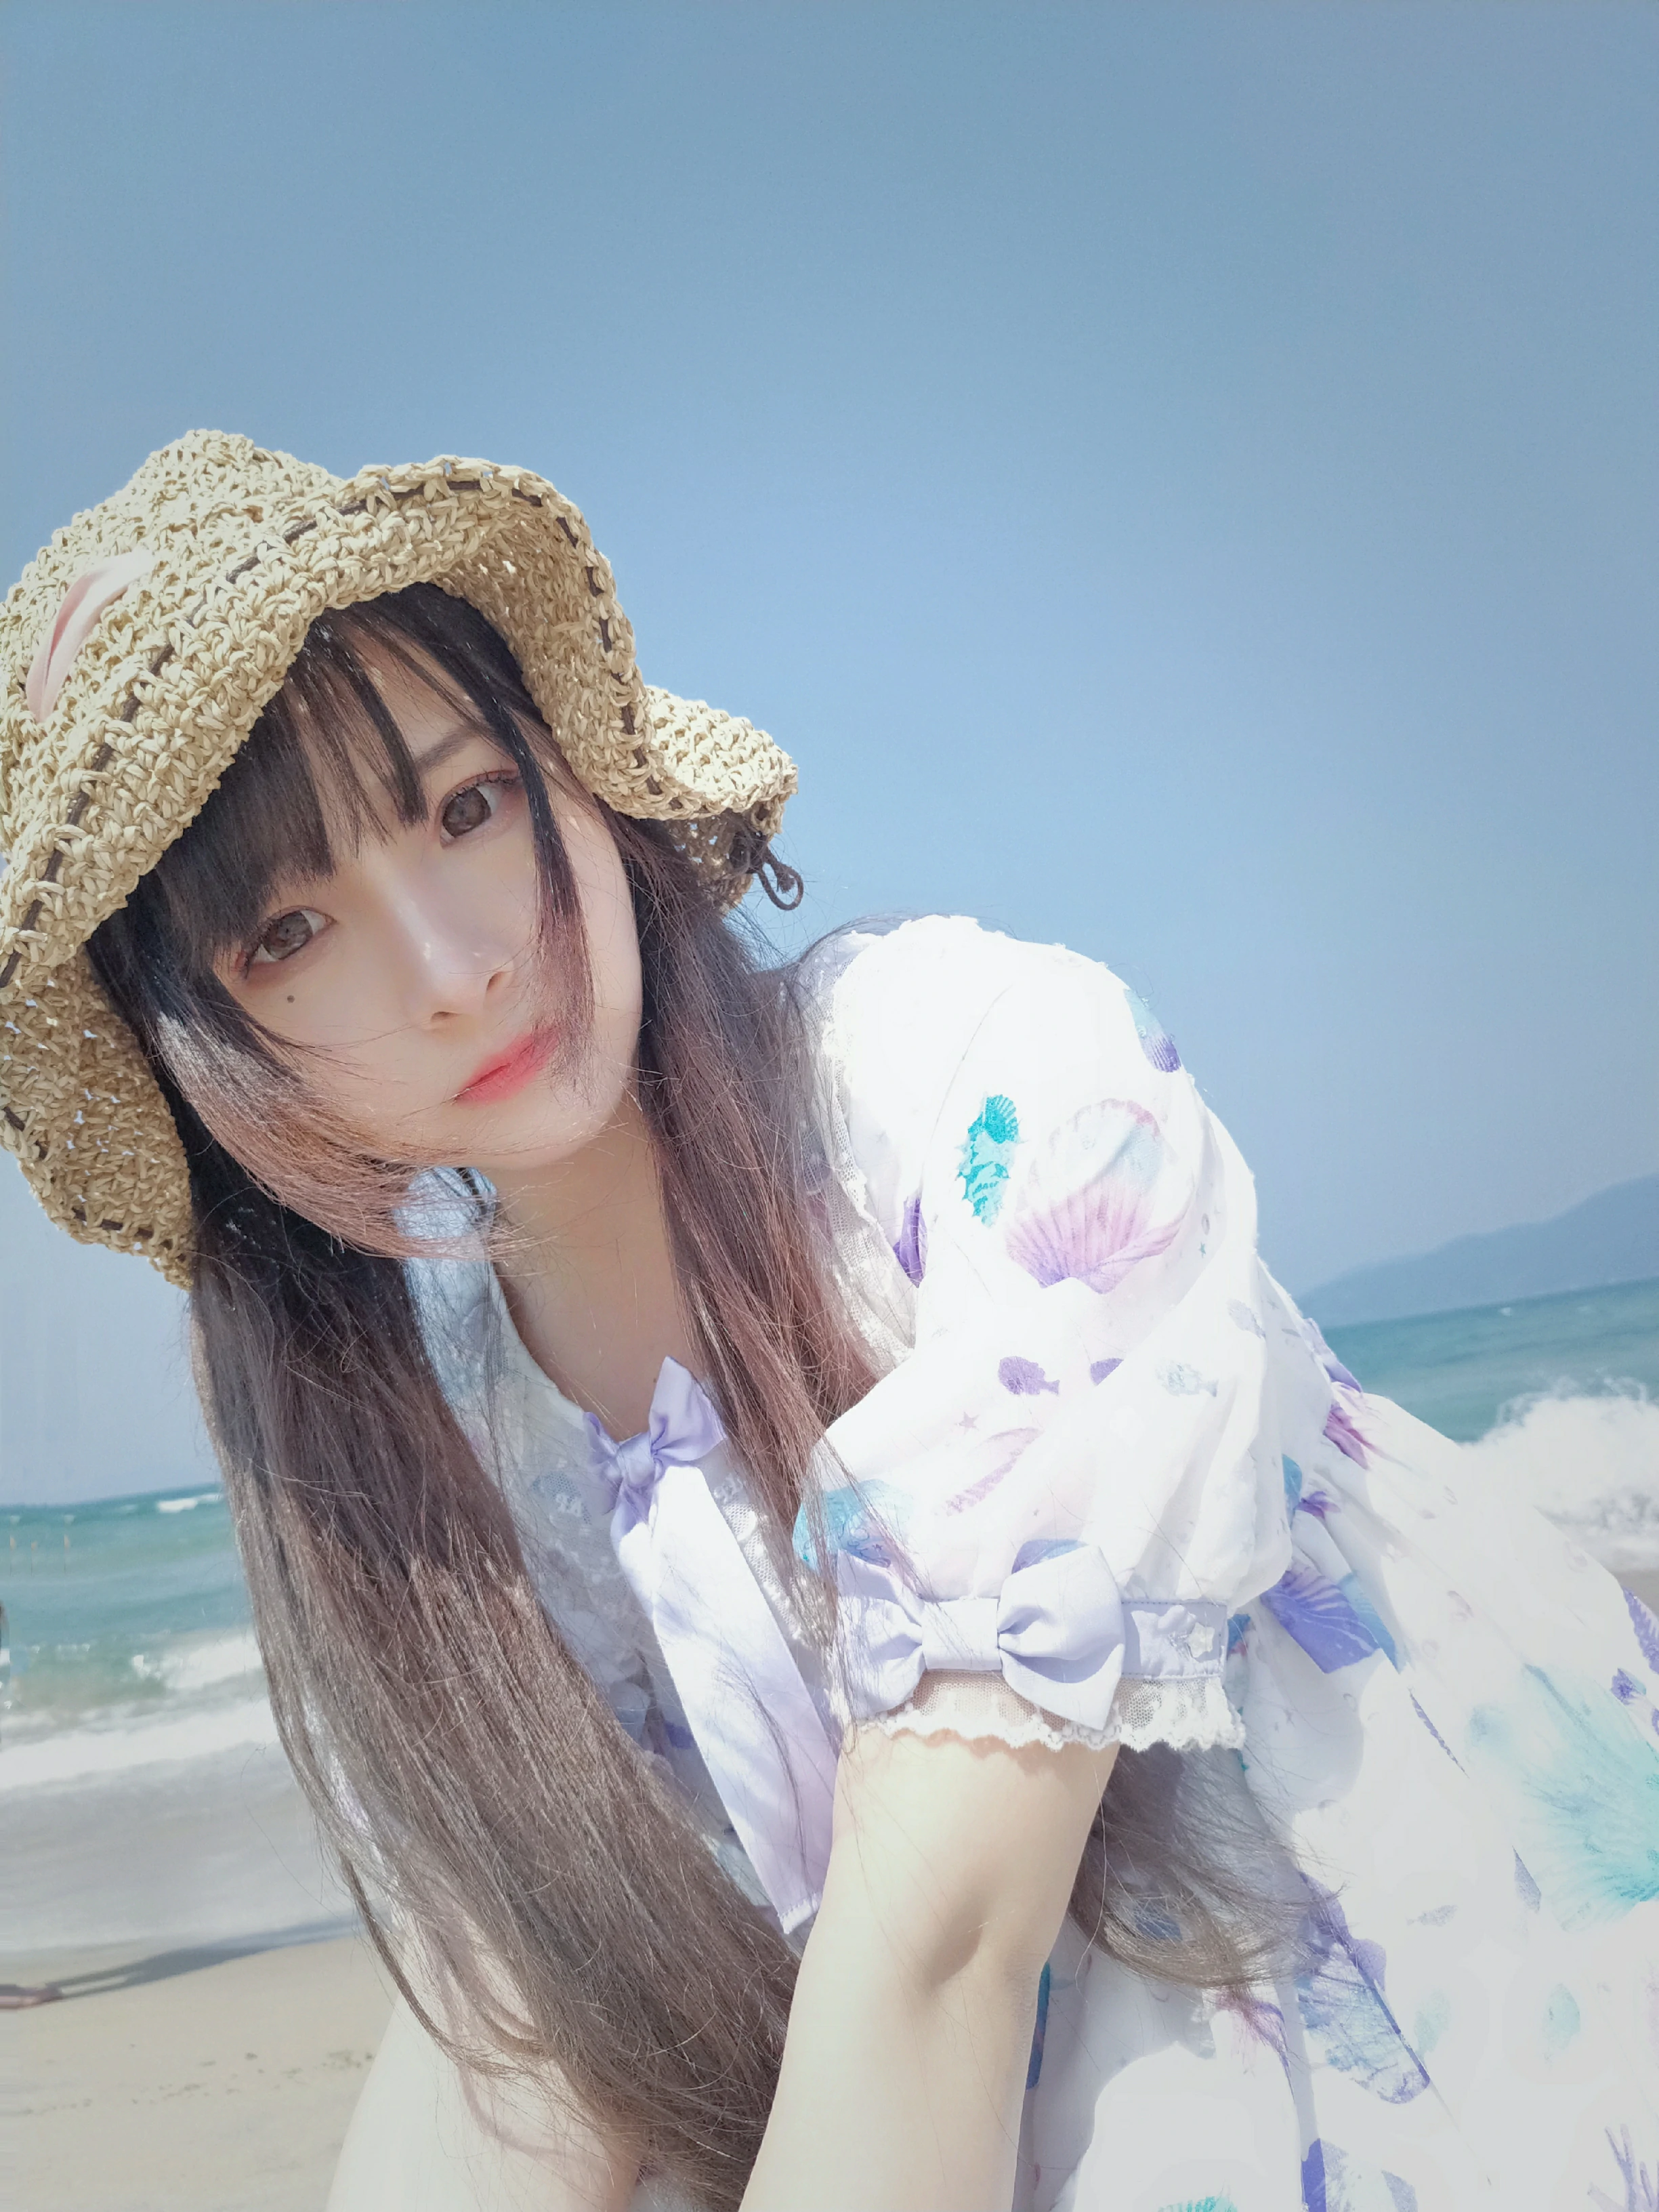 清纯少女 古川kagura 蓝色连身裙之沙滩写真,_20190210_191953